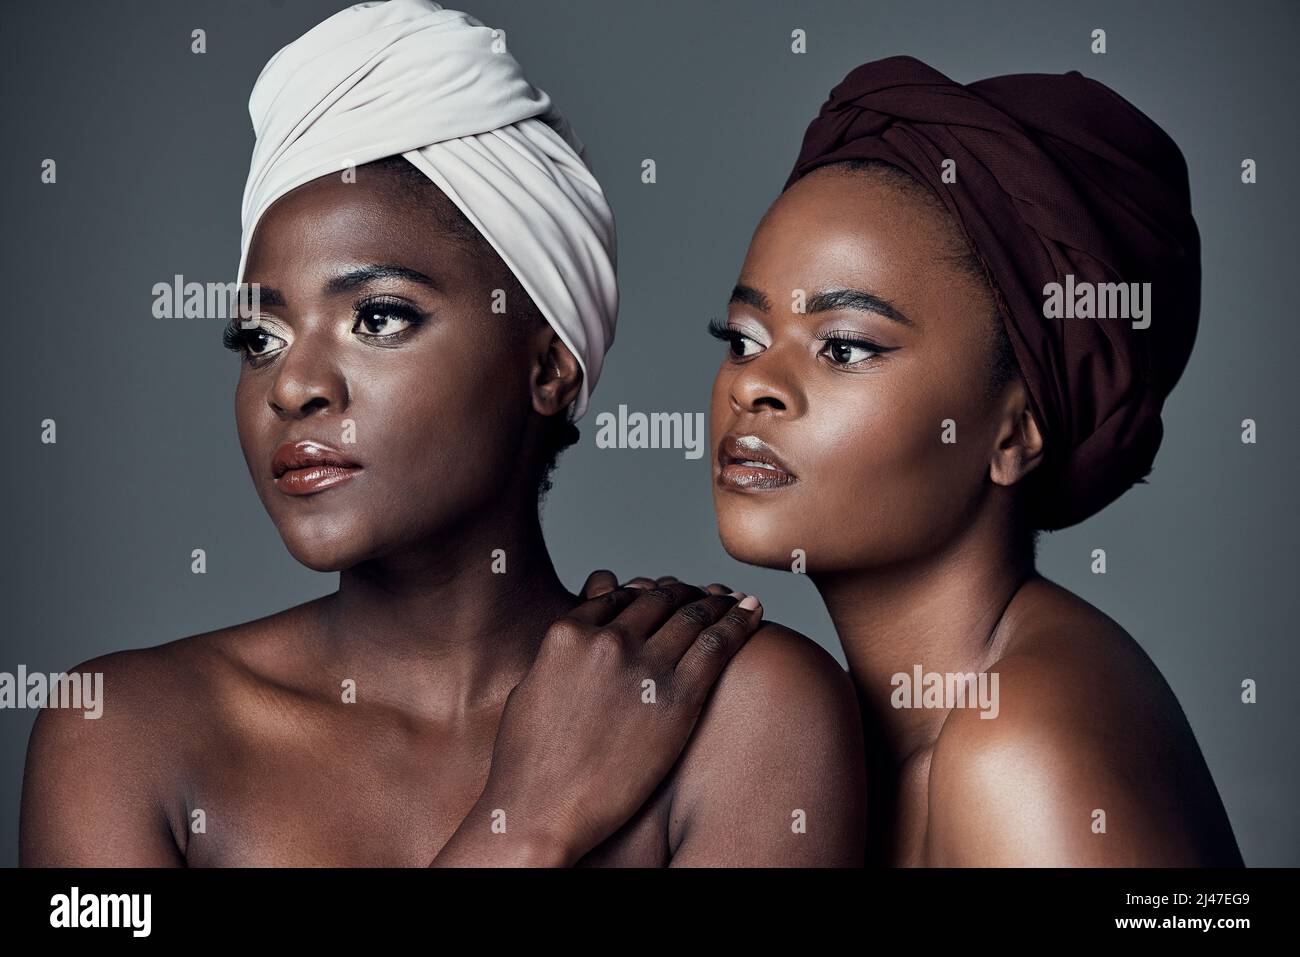 Reinas africanas. Estudio de dos hermosas mujeres jóvenes posando sobre un fondo gris. Foto de stock